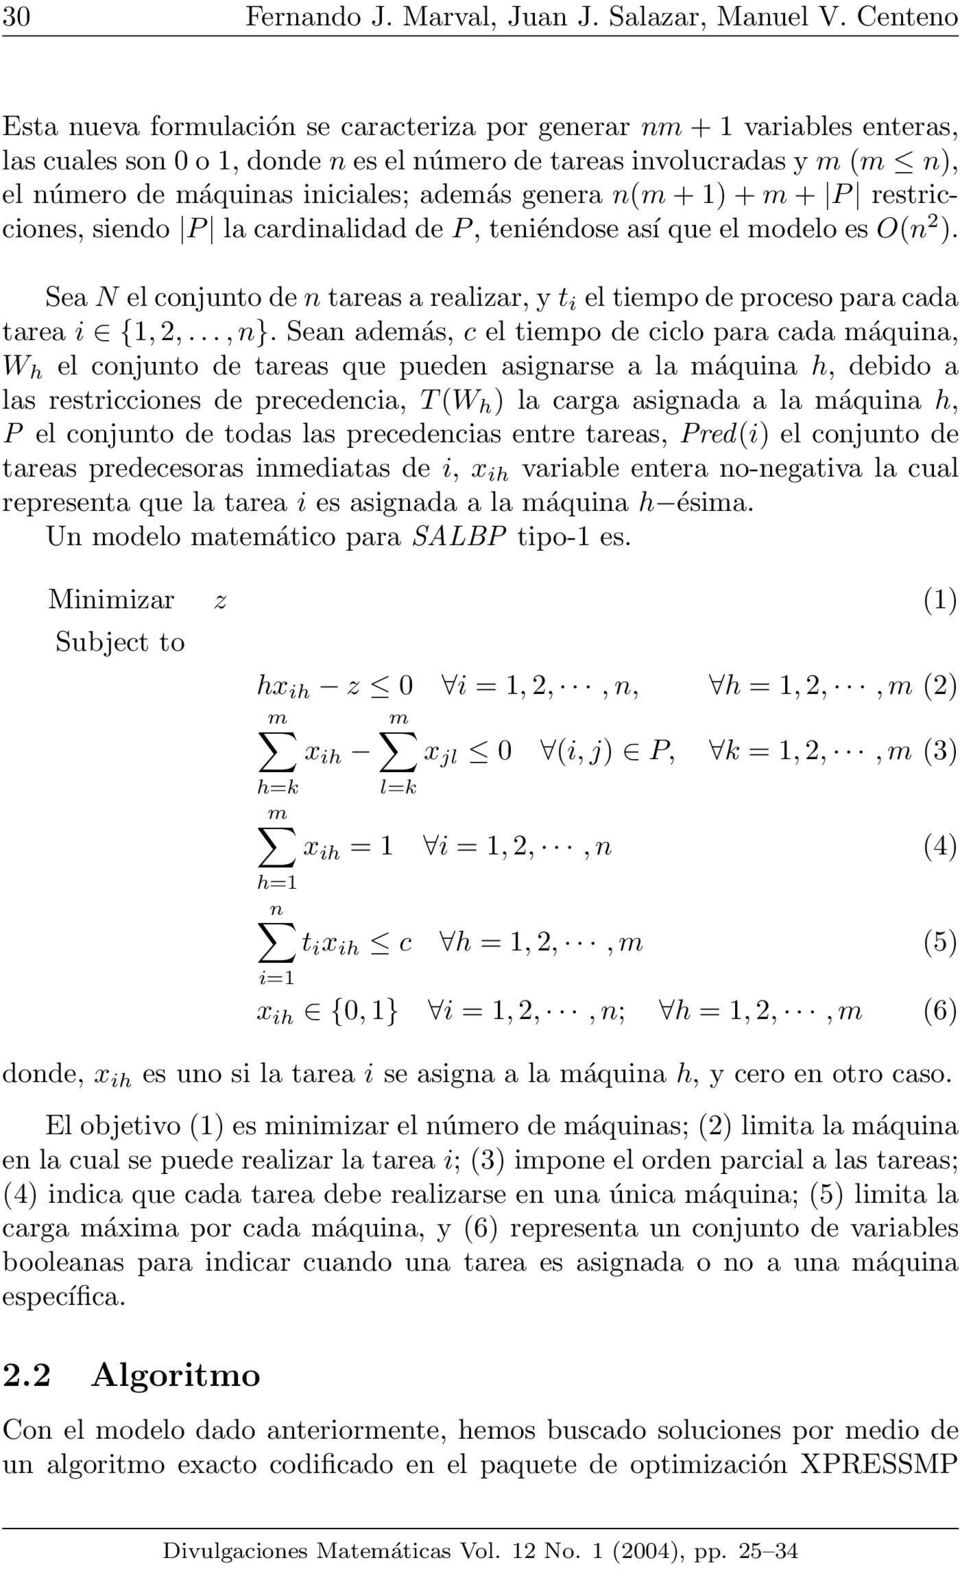 además genera n(m + 1) + m + P restricciones, siendo P la cardinalidad de P, teniéndose así que el modelo es O(n 2 ).